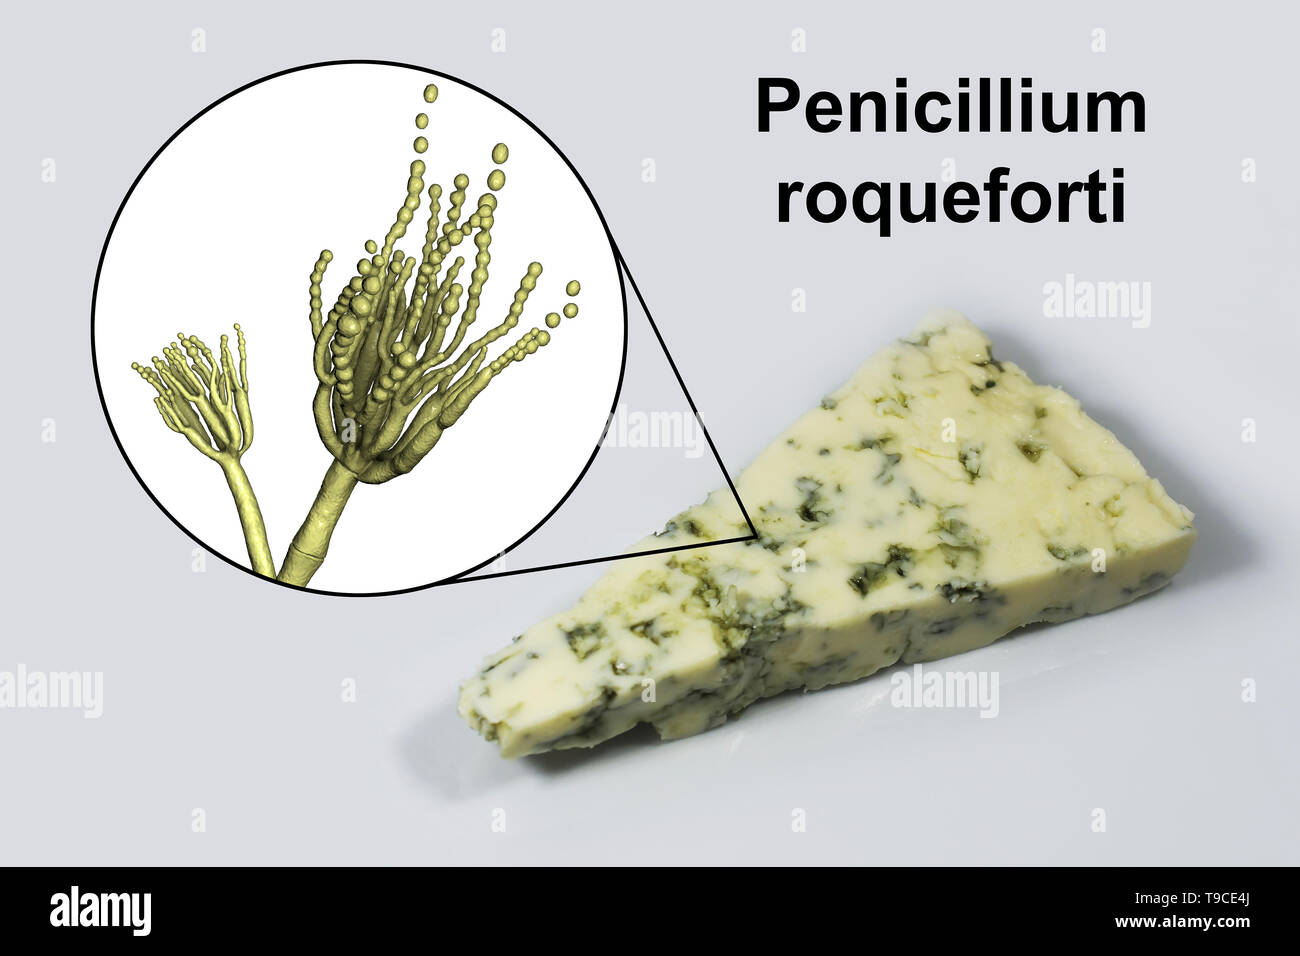 Penicillium fungus and Roquefort cheese, composite image Stock Photo